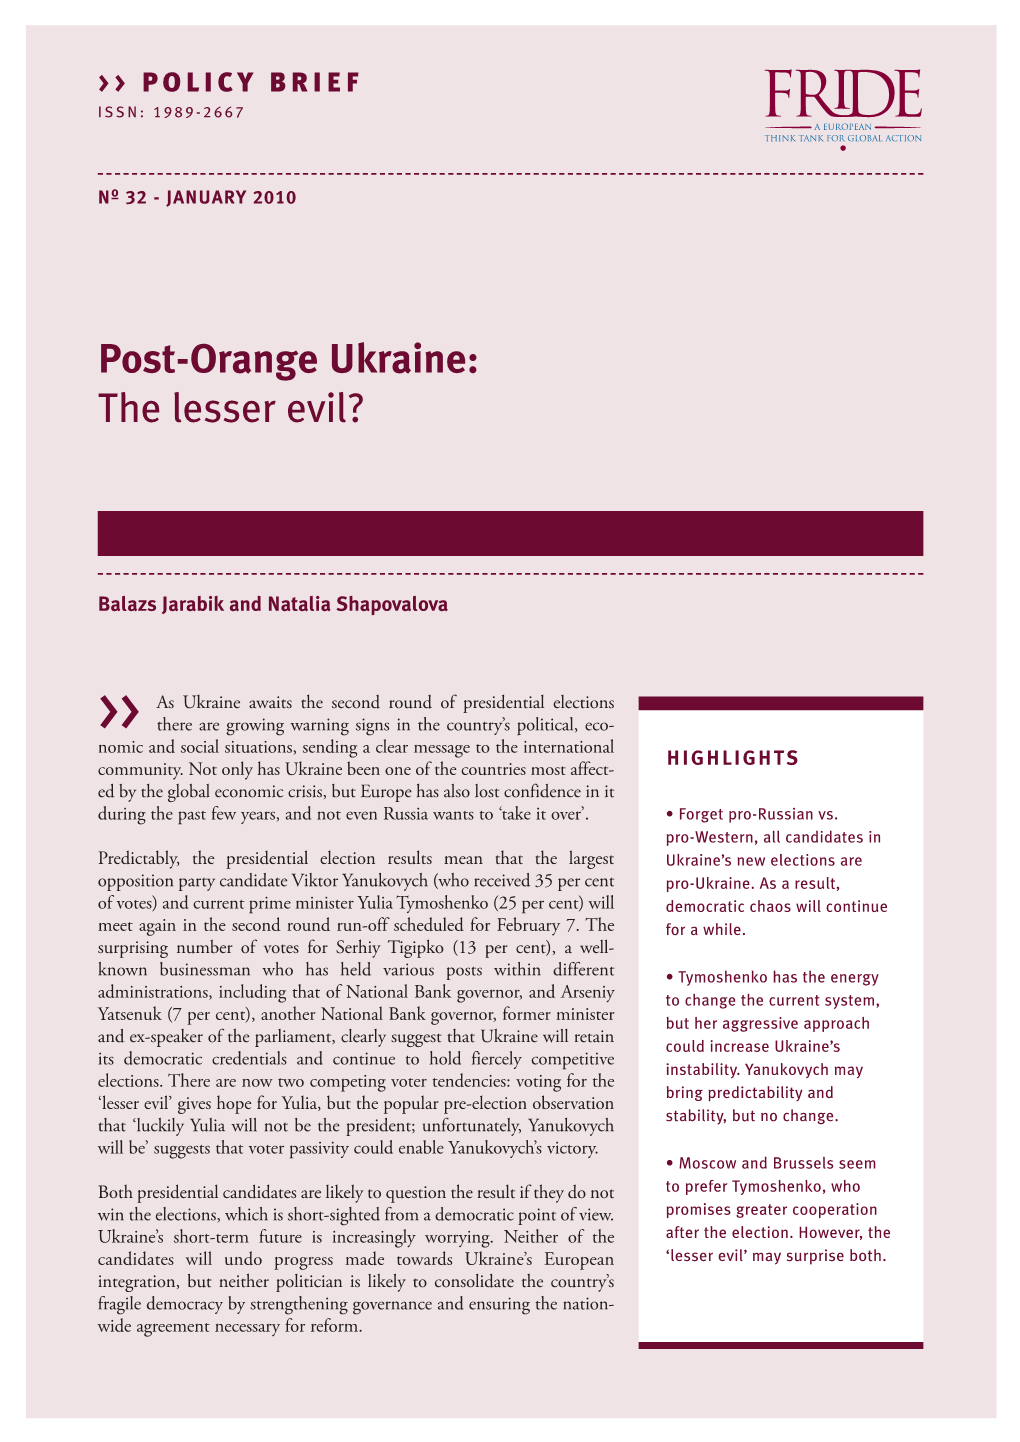 Post-Orange Ukraine: the Lesser Evil?